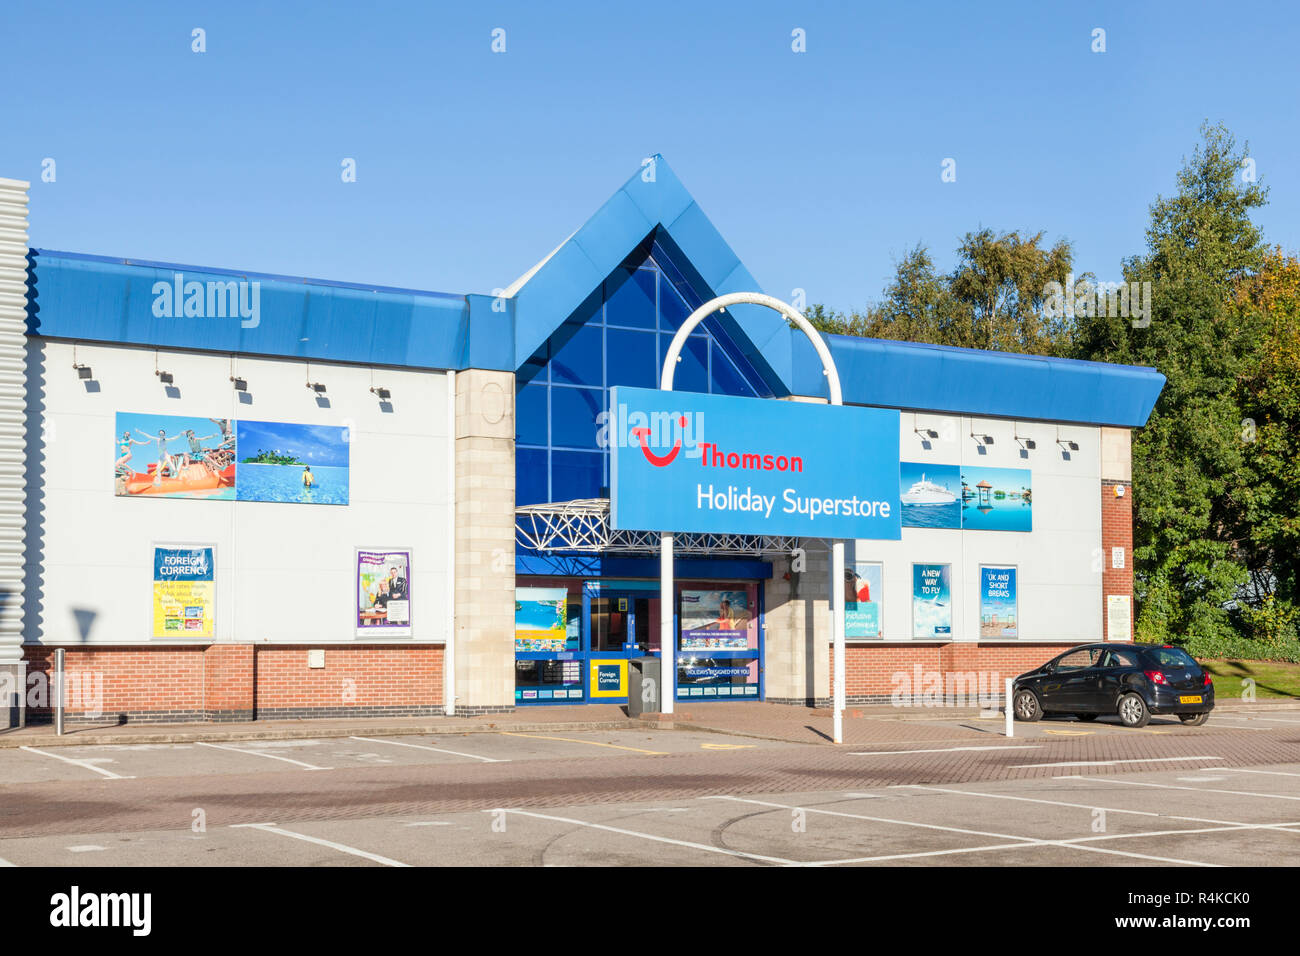 Thomson Holiday Superstore, Castle Marina Retail Park, Nottingham, England, UK Stock Photo